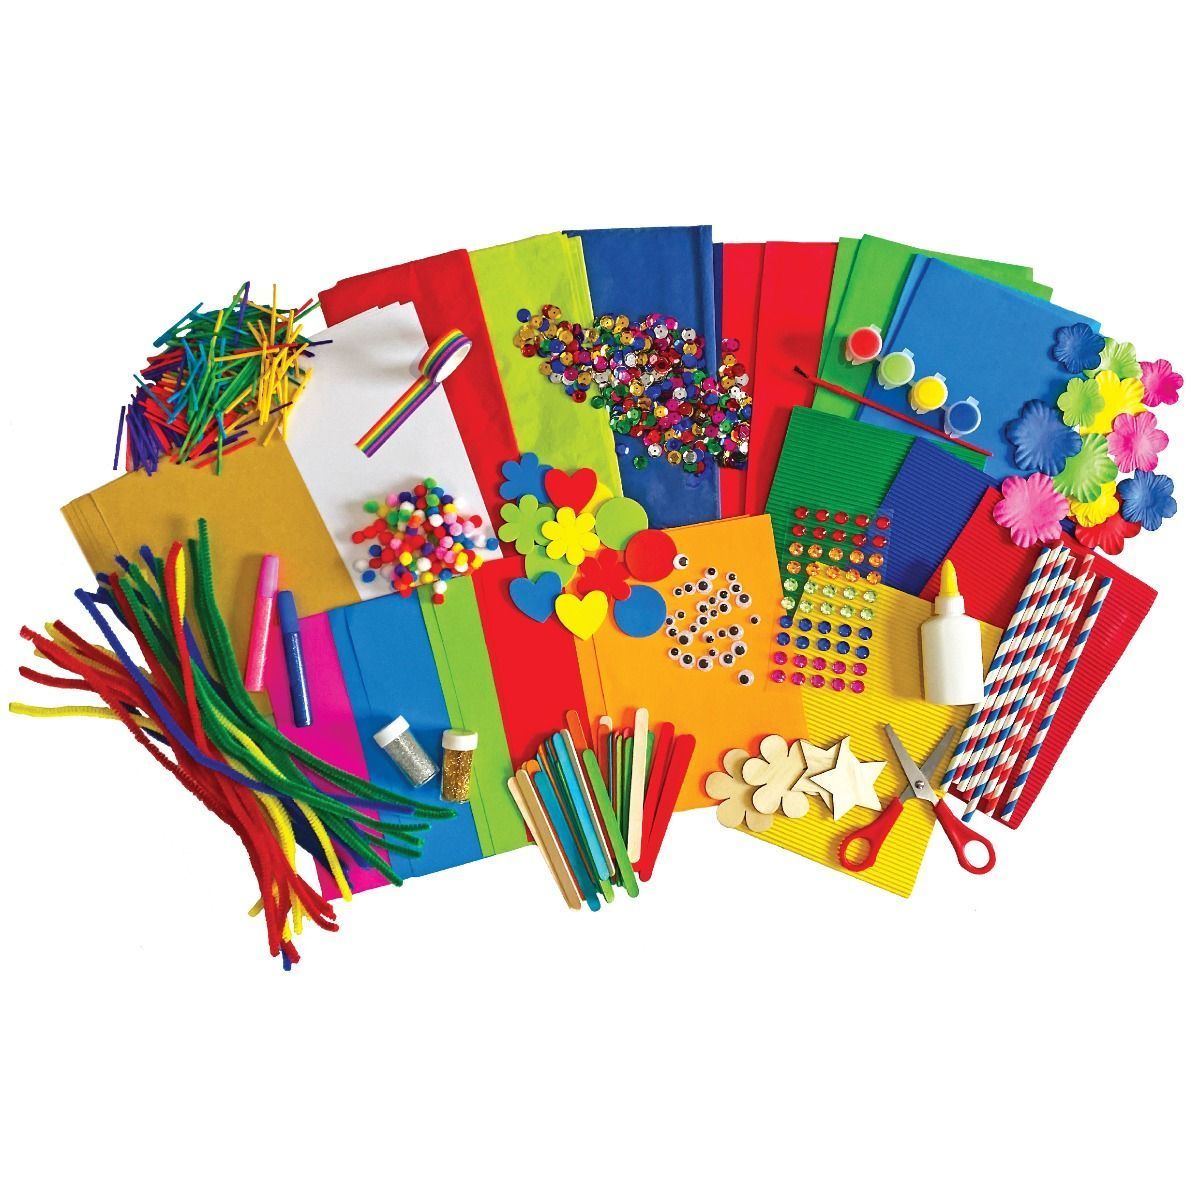 Kit di artigianato gigante per bambini-500 pezzi assortiti